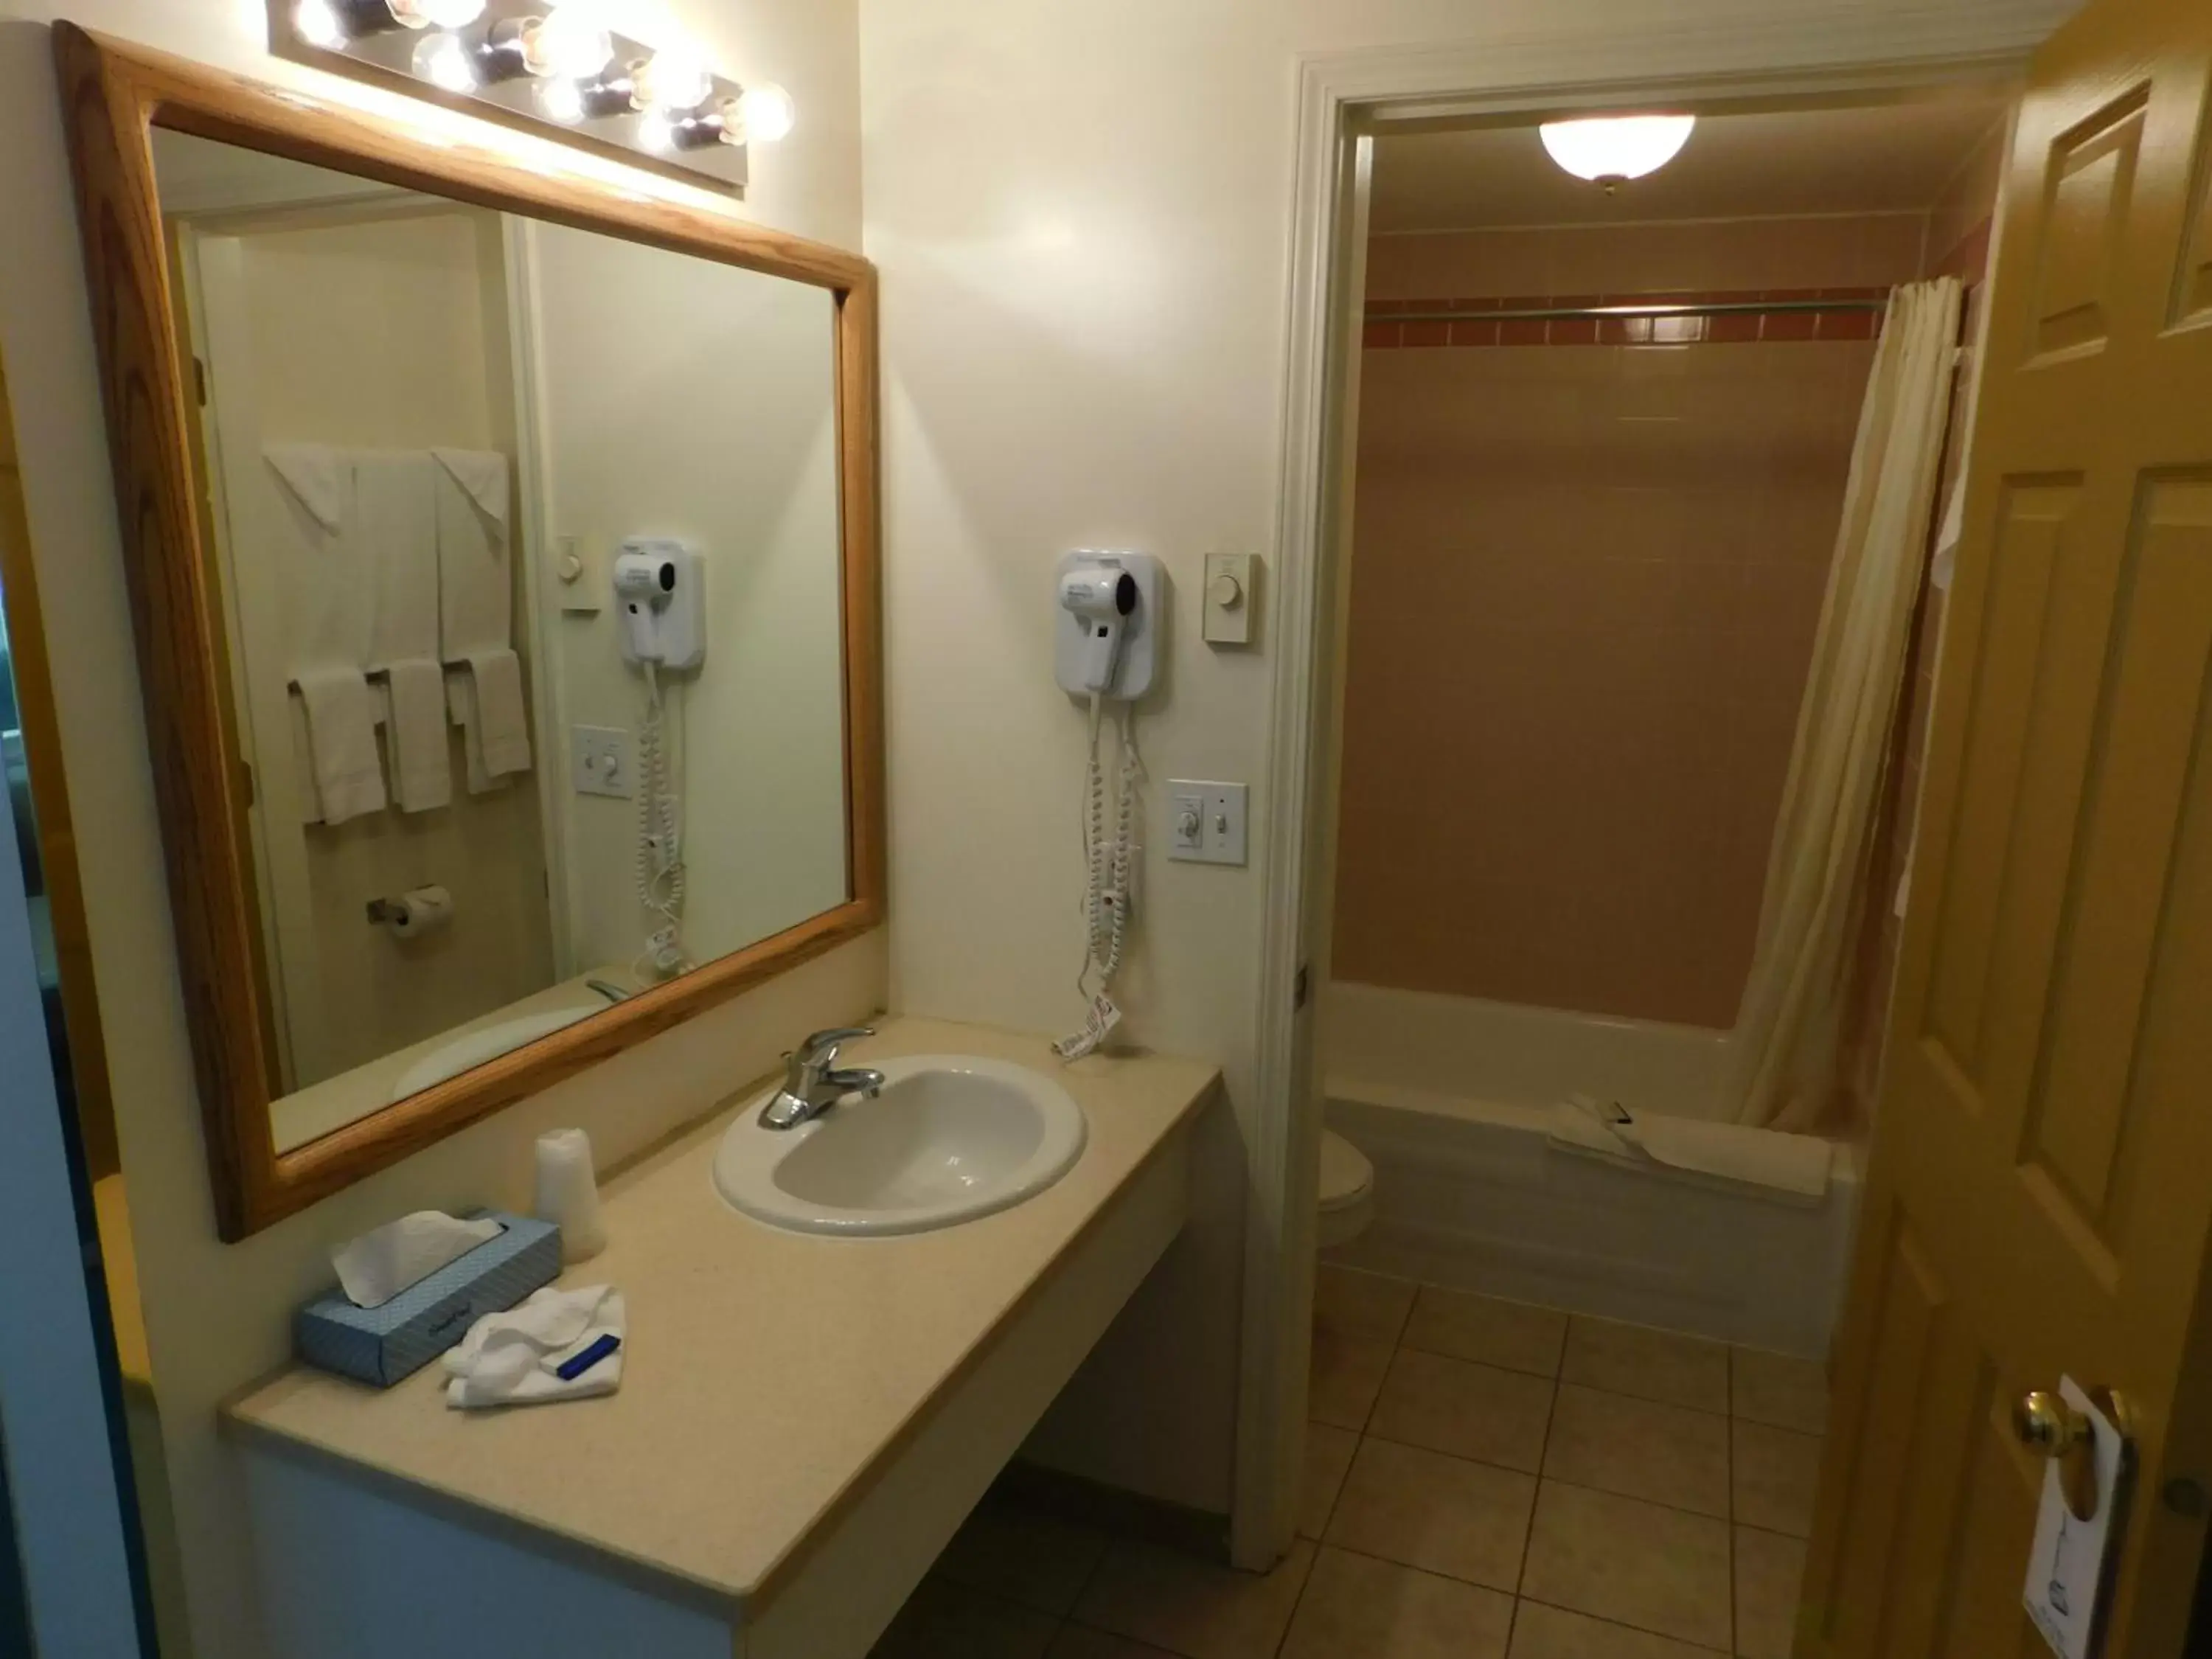 Bathroom in Western Budget Motel #1 Leduc/Nisku